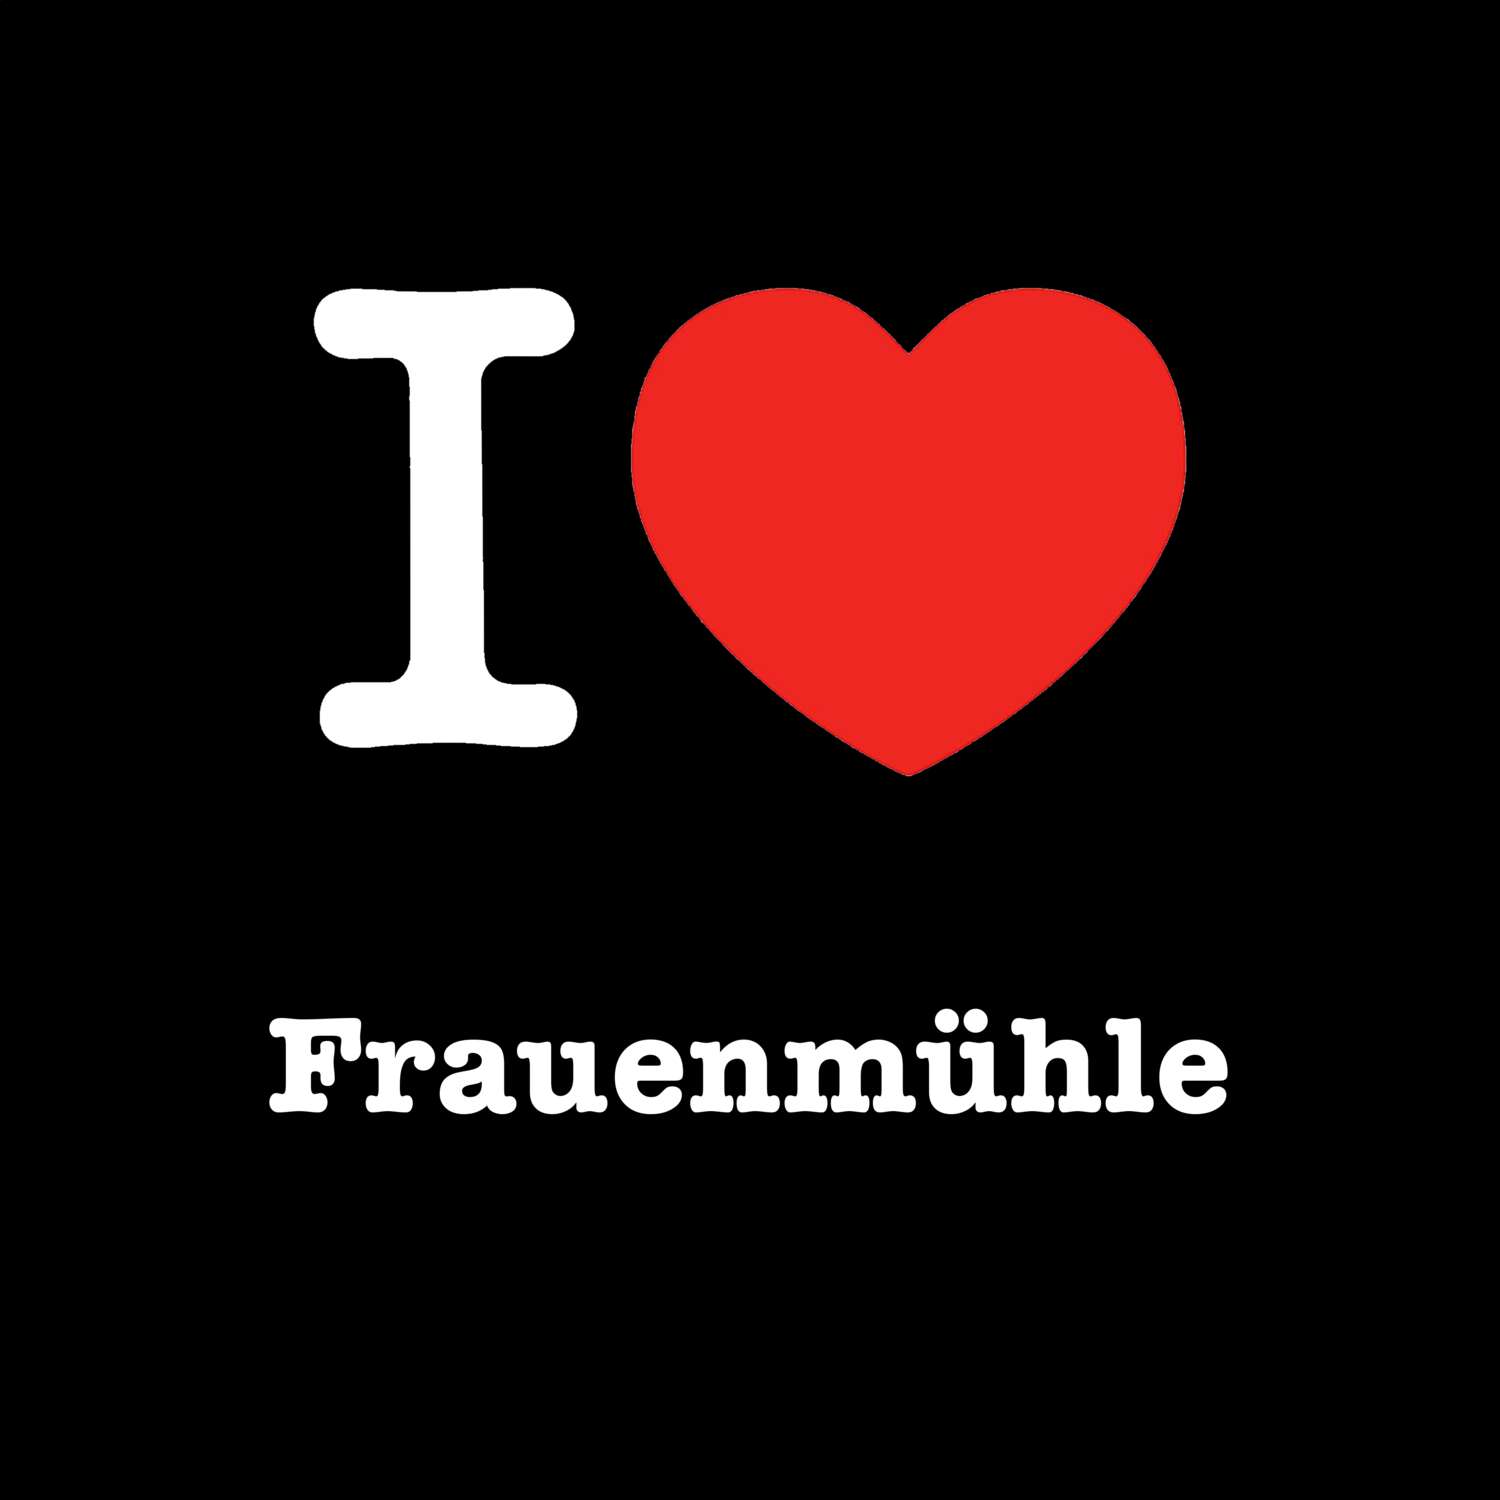 Frauenmühle T-Shirt »I love«